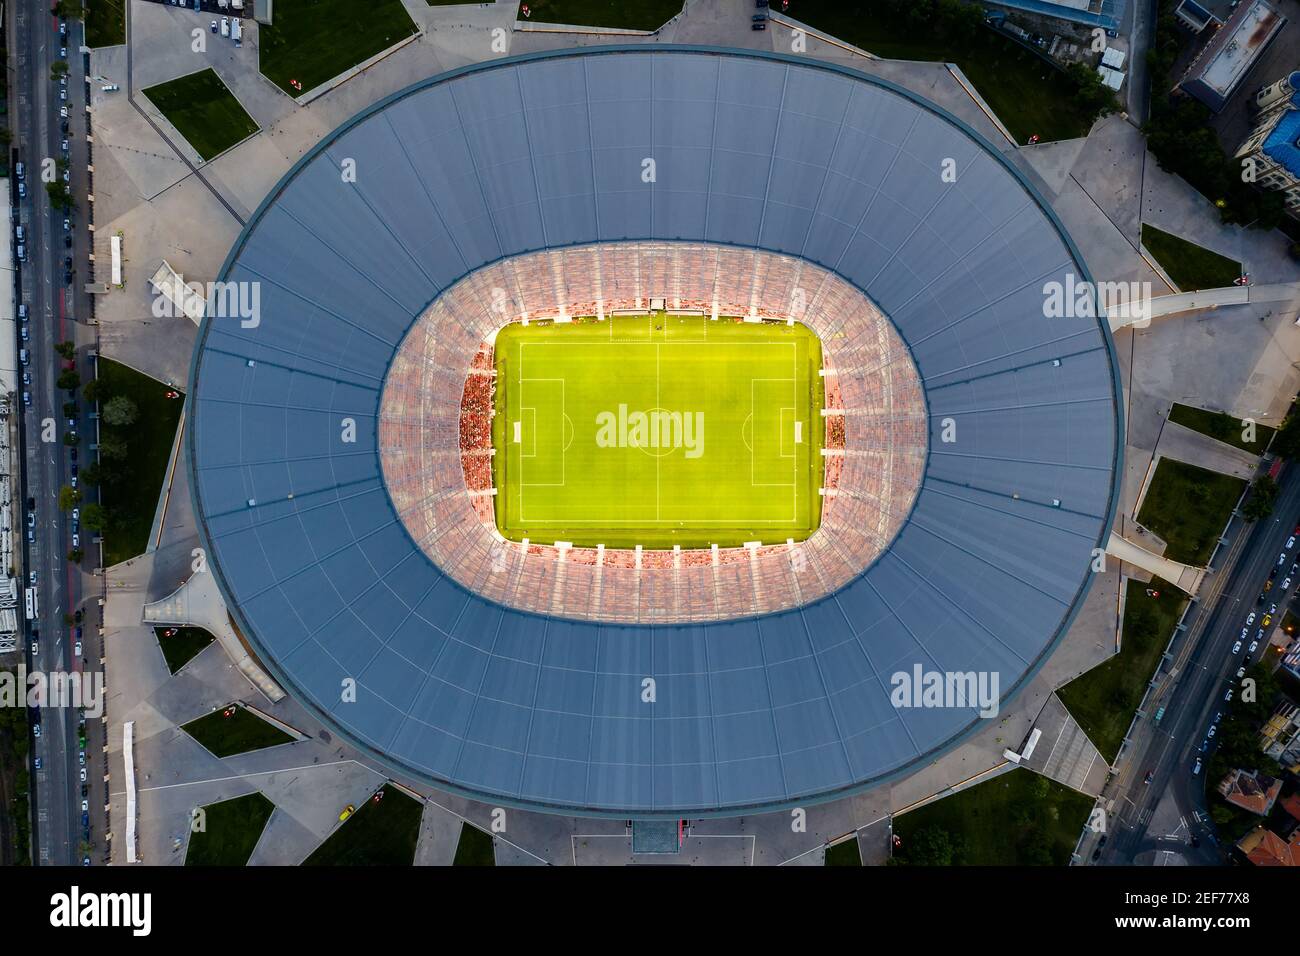 Luftbild über die Puskas Arena in Budapest Ungarn. Austragungsort für mehrere Spiele im Jahr 2021 für Champions League Stockfoto